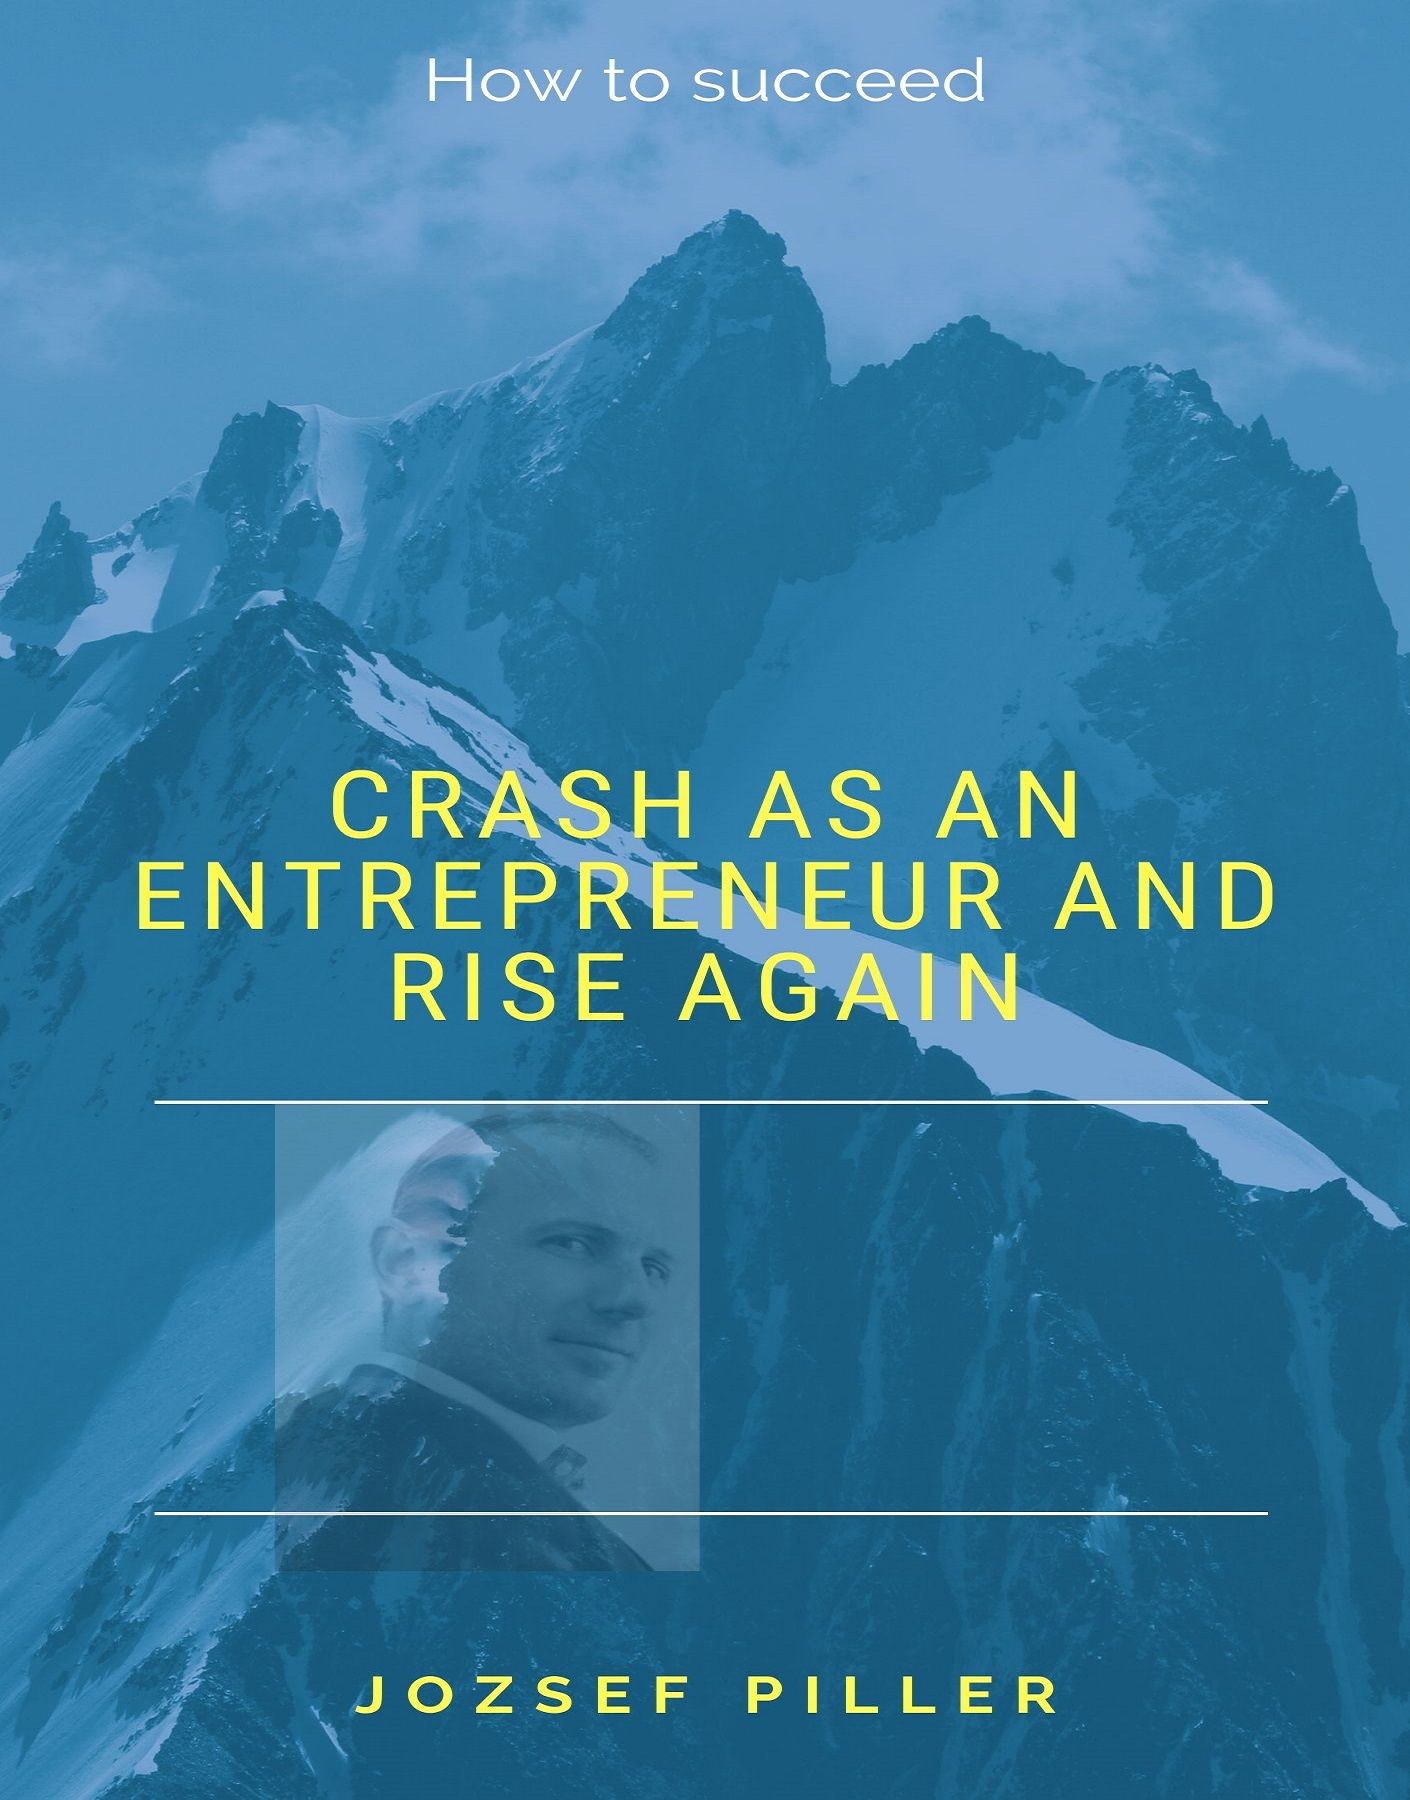 Crash as an Entrepreneur and Rise Again, ljudbok av Jozsef Piller